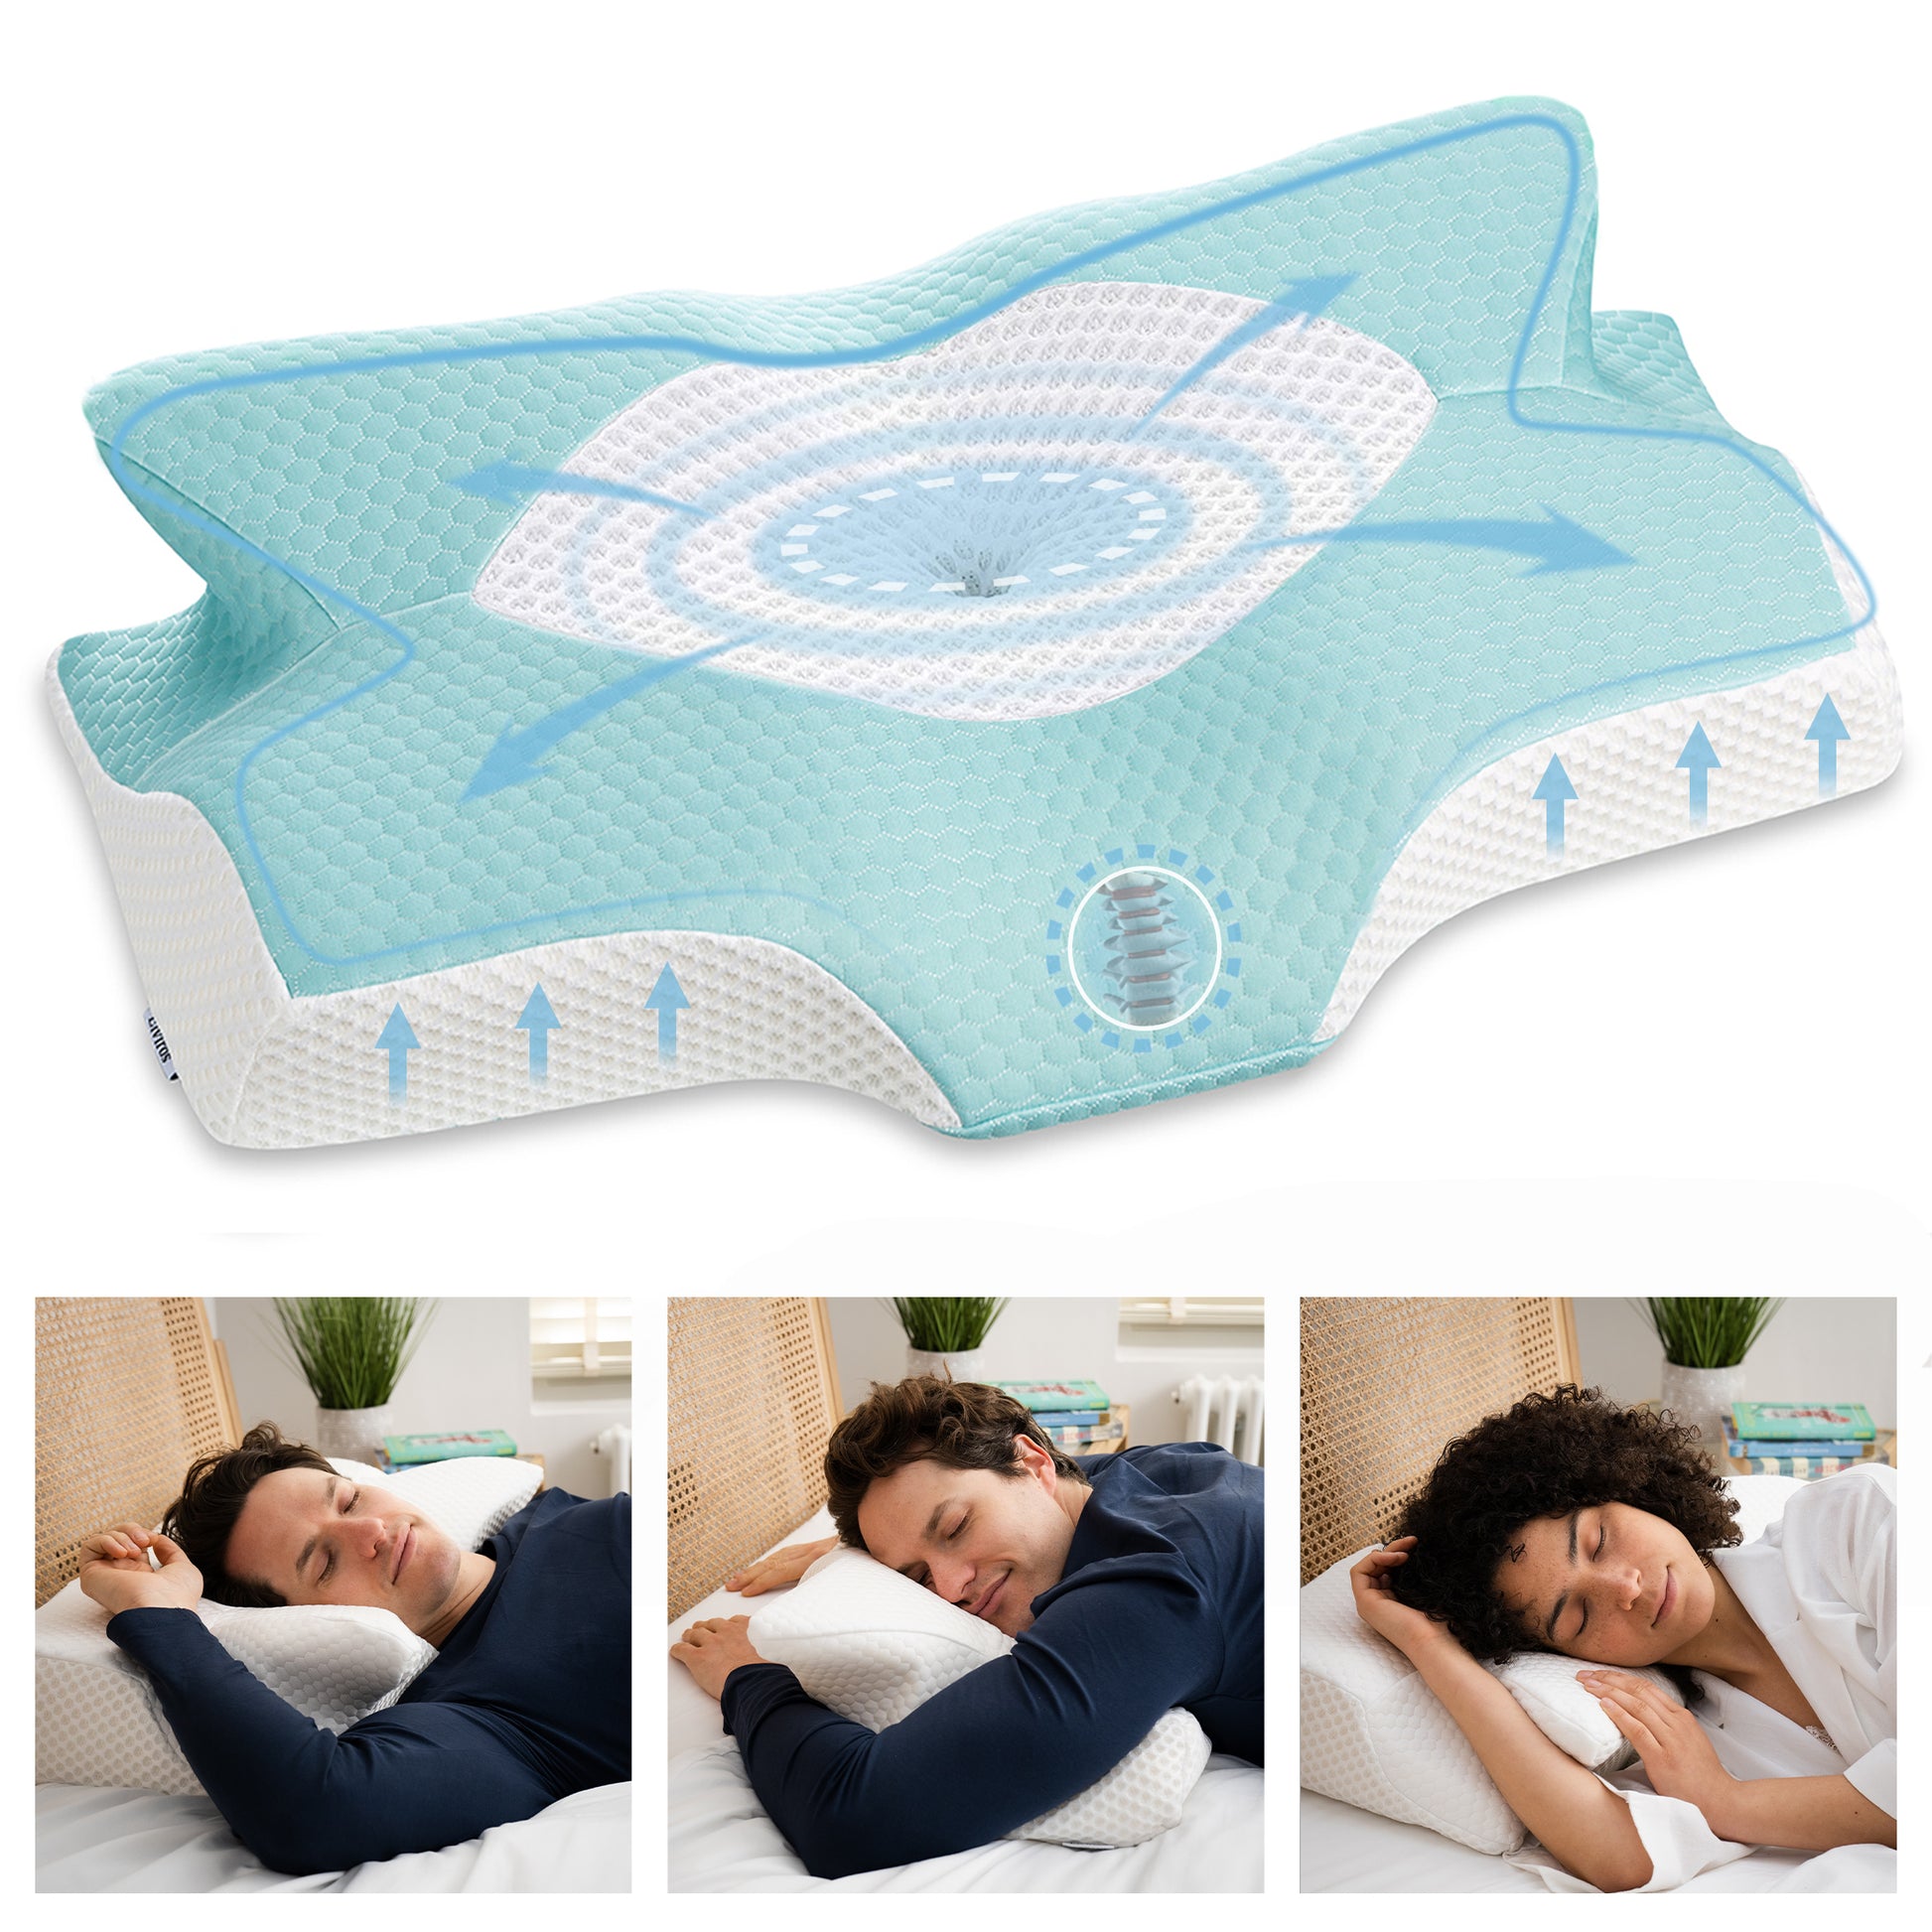 Full Body Pillow for Side Sleepers | Shredded Memory Foam Pillow